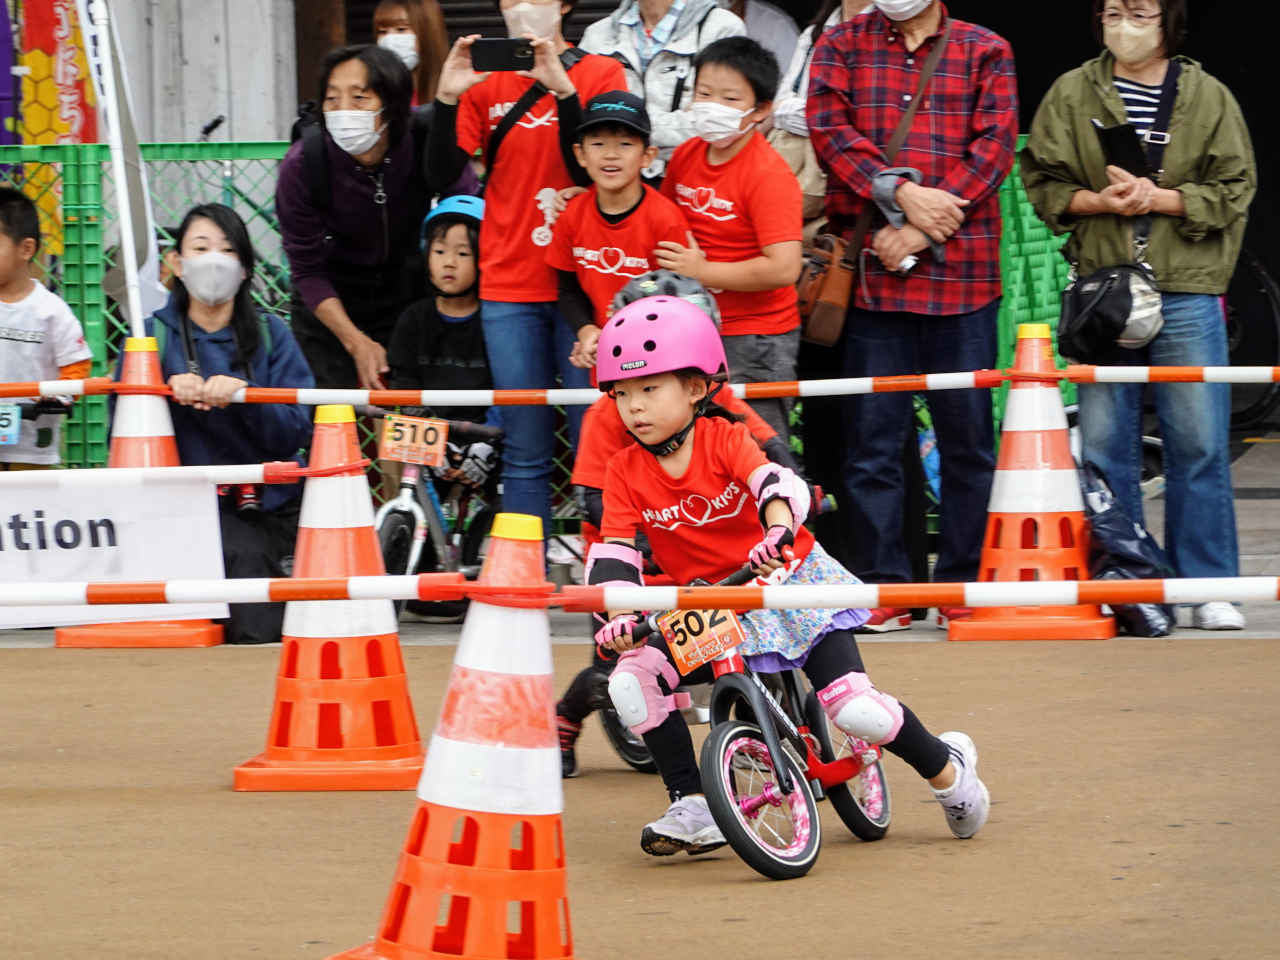 ストライダー大会のジャパンカップキックバイク大会 5歳決勝